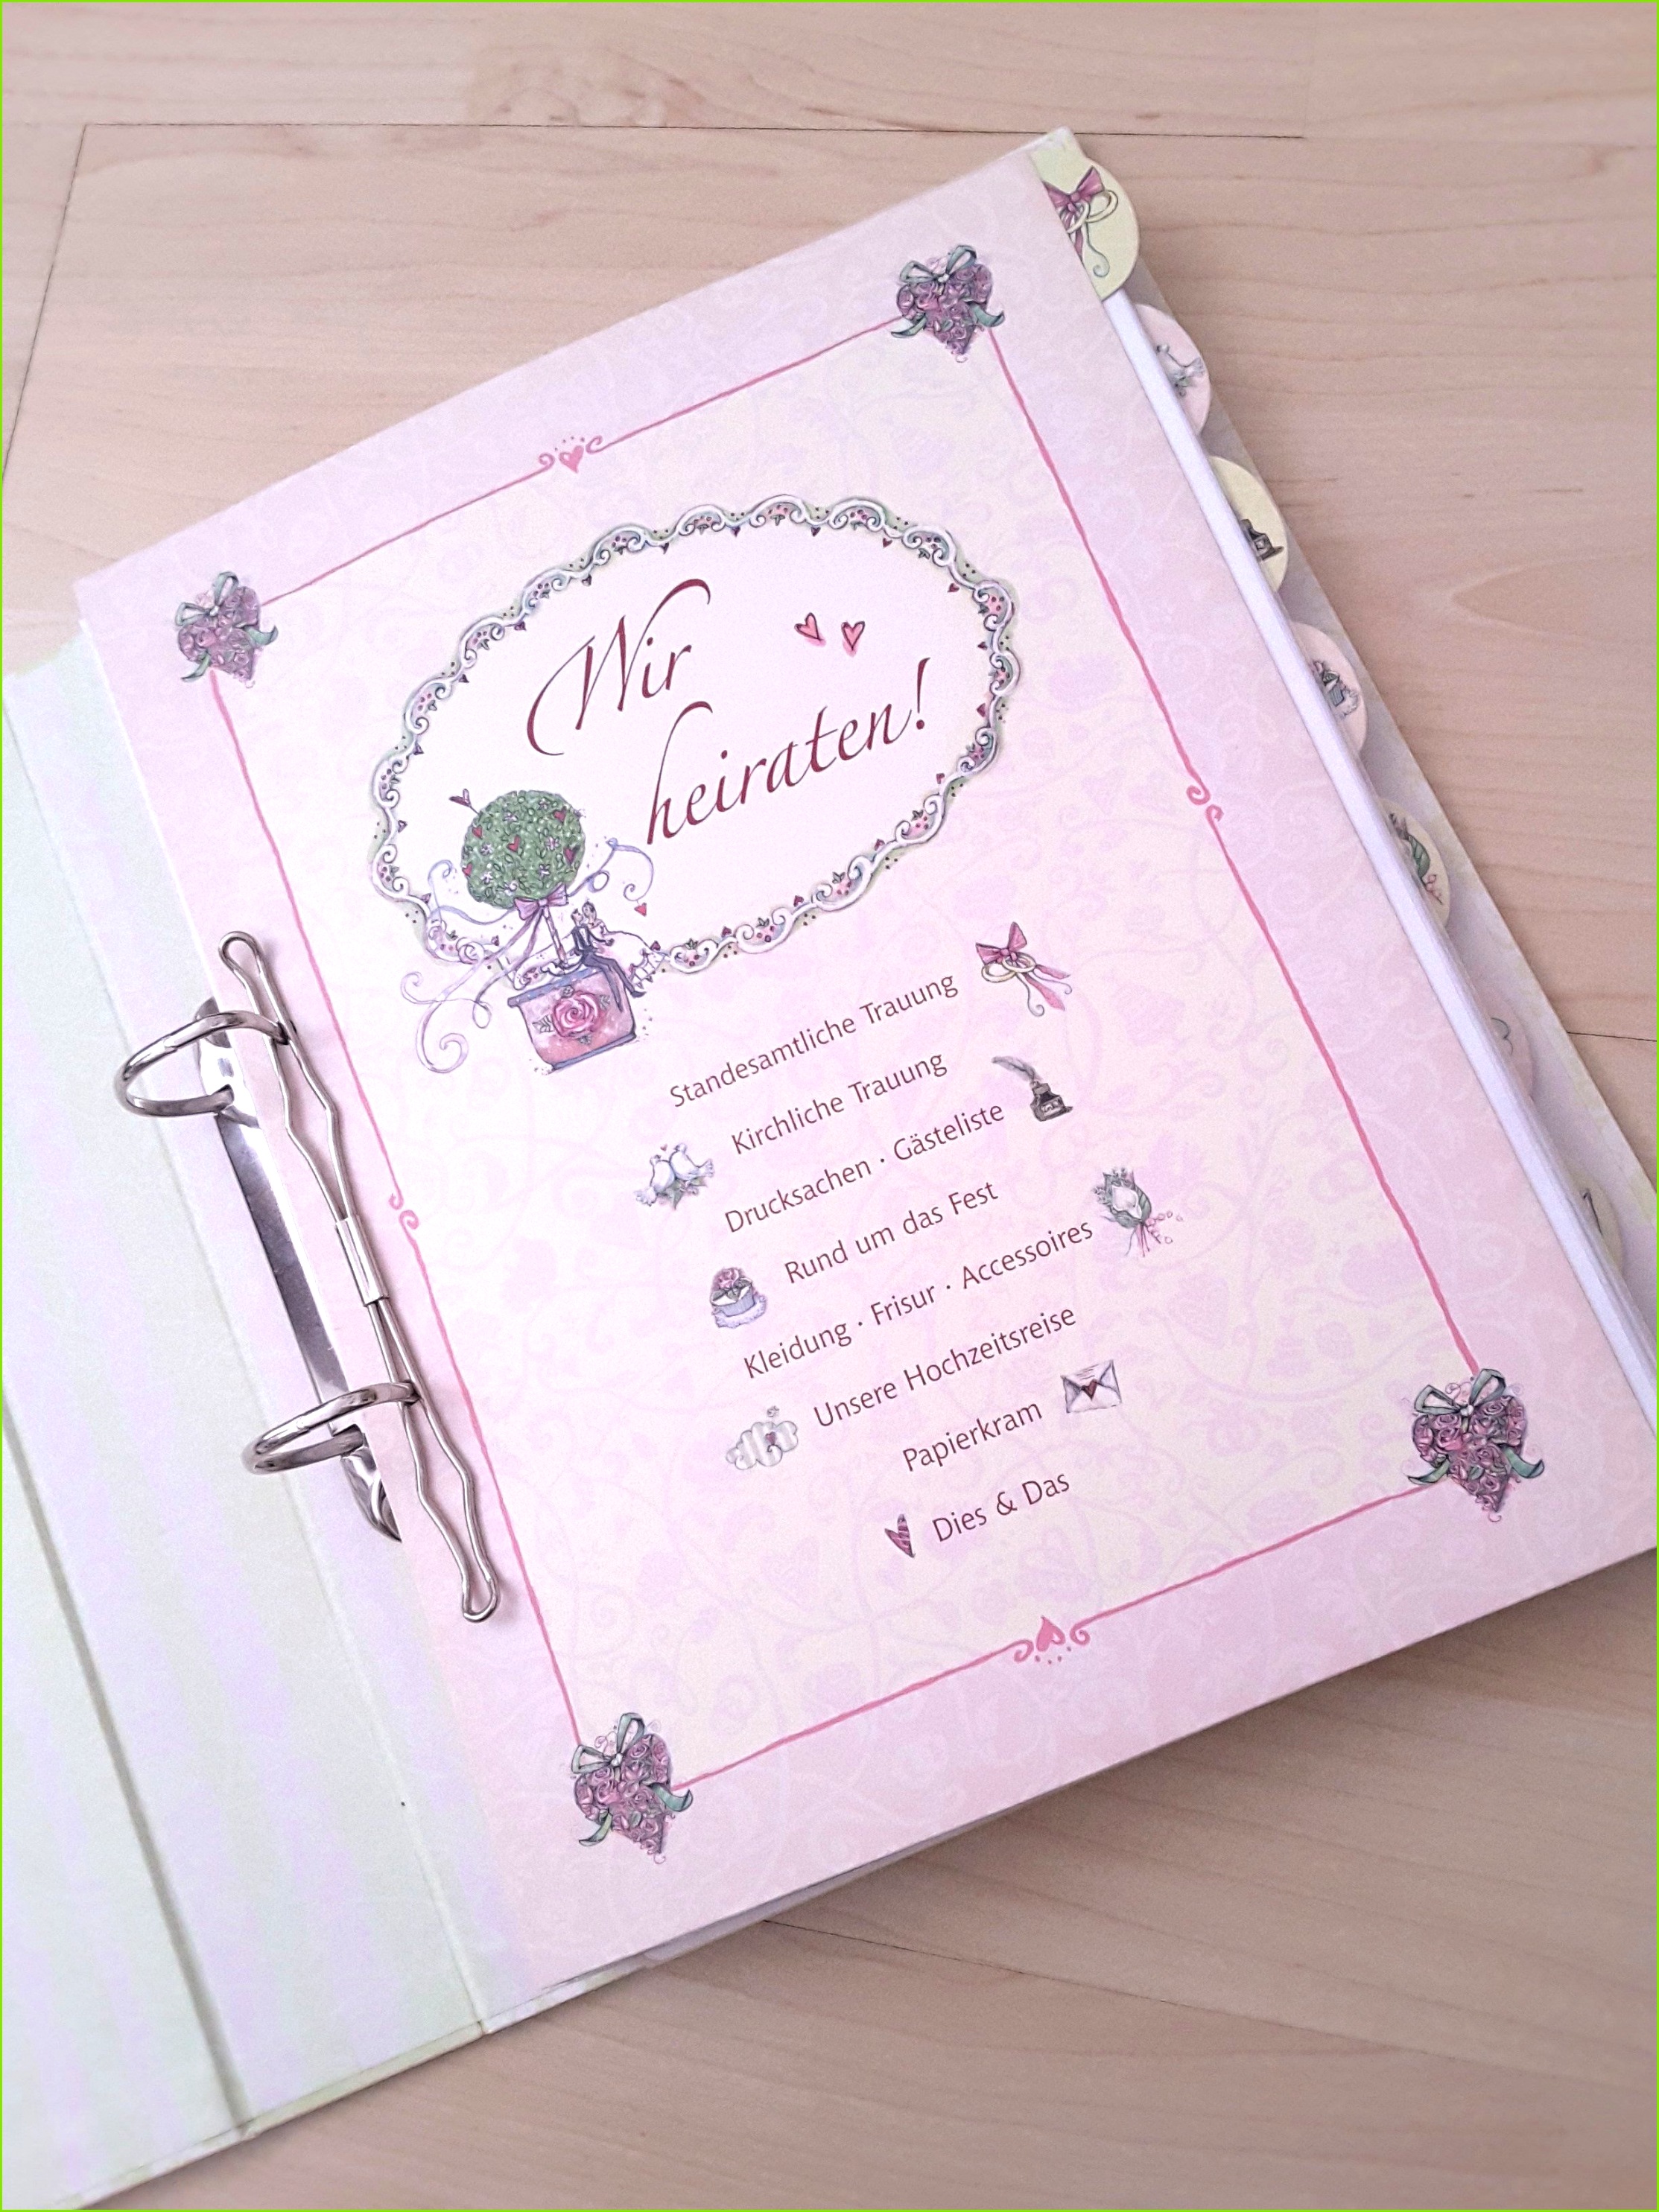 Vorlagen Hochzeit Einladung Text Blog Postkarte Hochzeitseinladung Neue Probe Media Image 0d 59 82